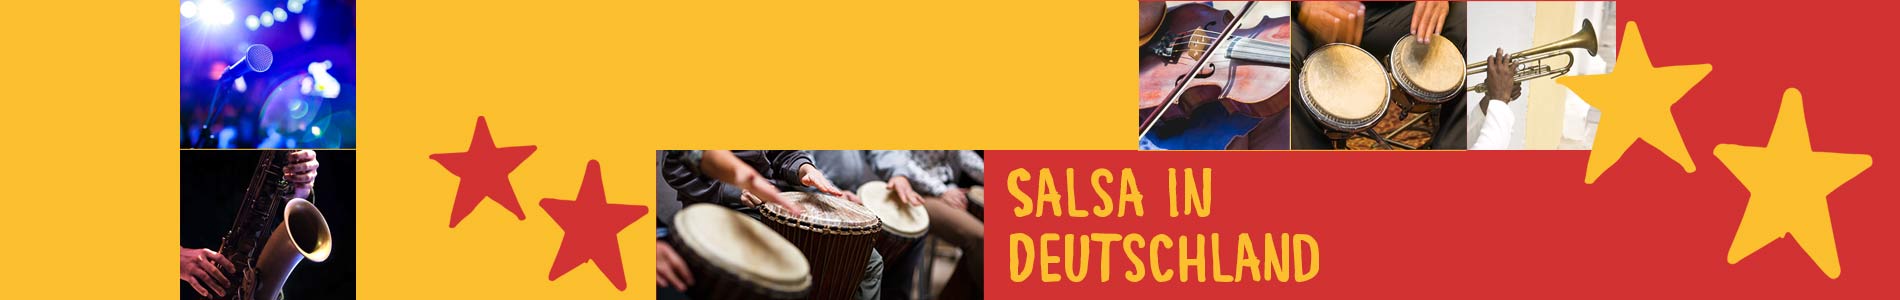 Salsa in Bühlertann – Salsa lernen und tanzen, Tanzkurse, Partys, Veranstaltungen